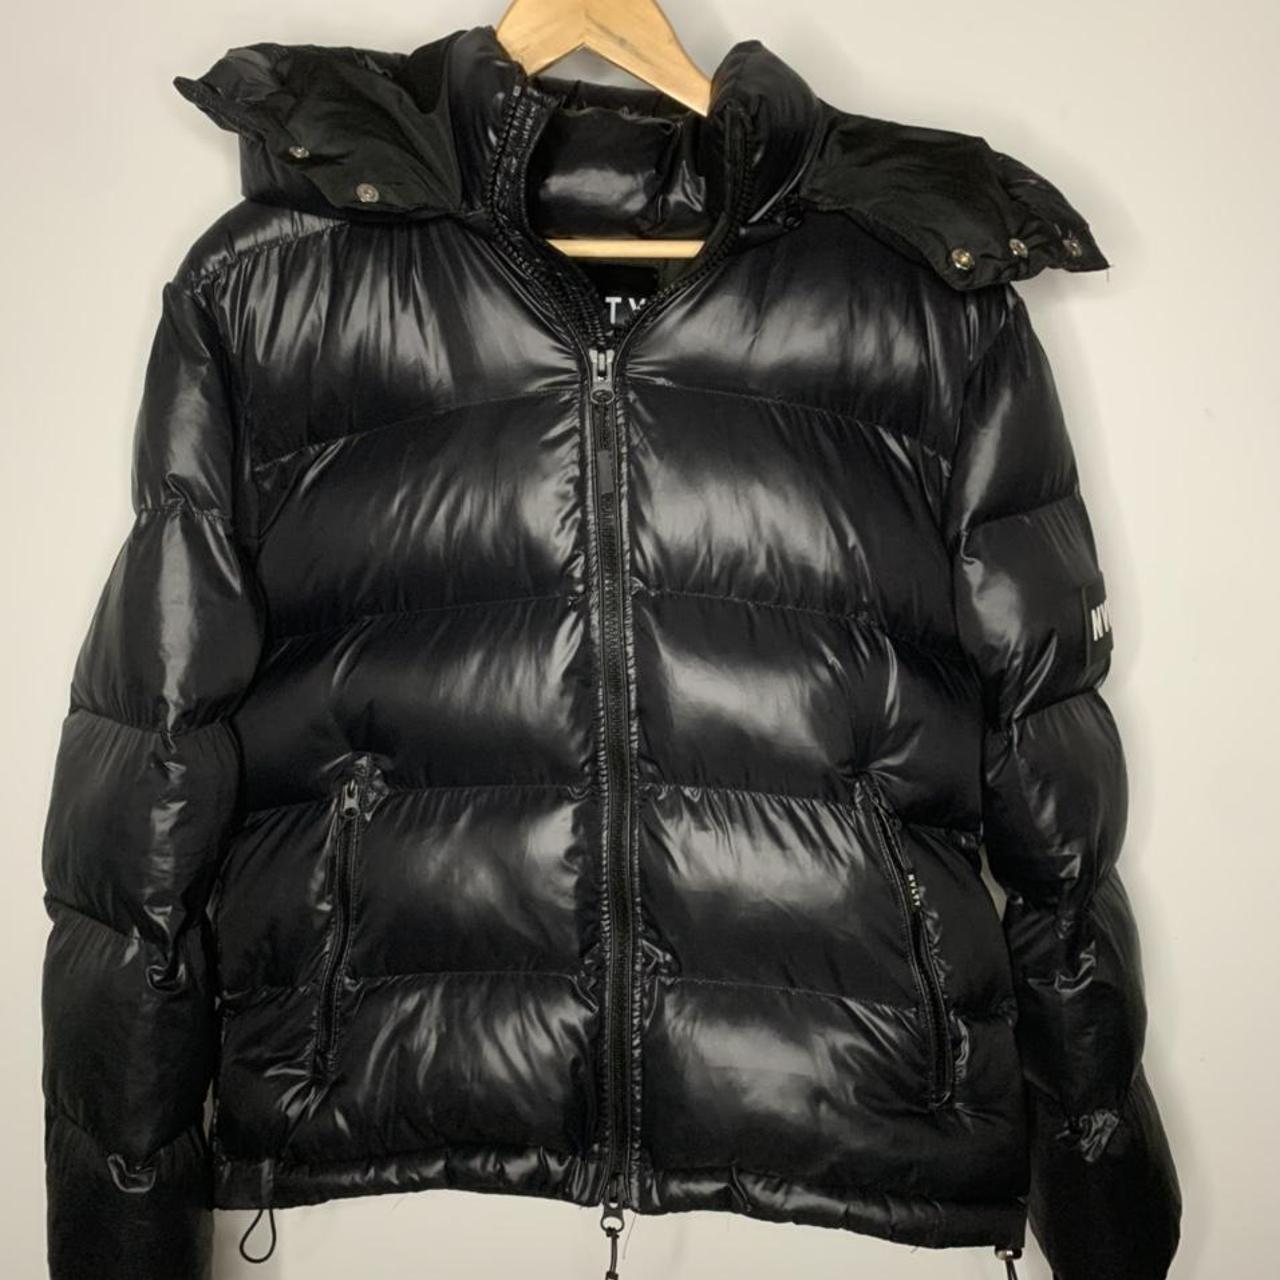 NVLTY shiny puffer jacket Black Size... - Depop